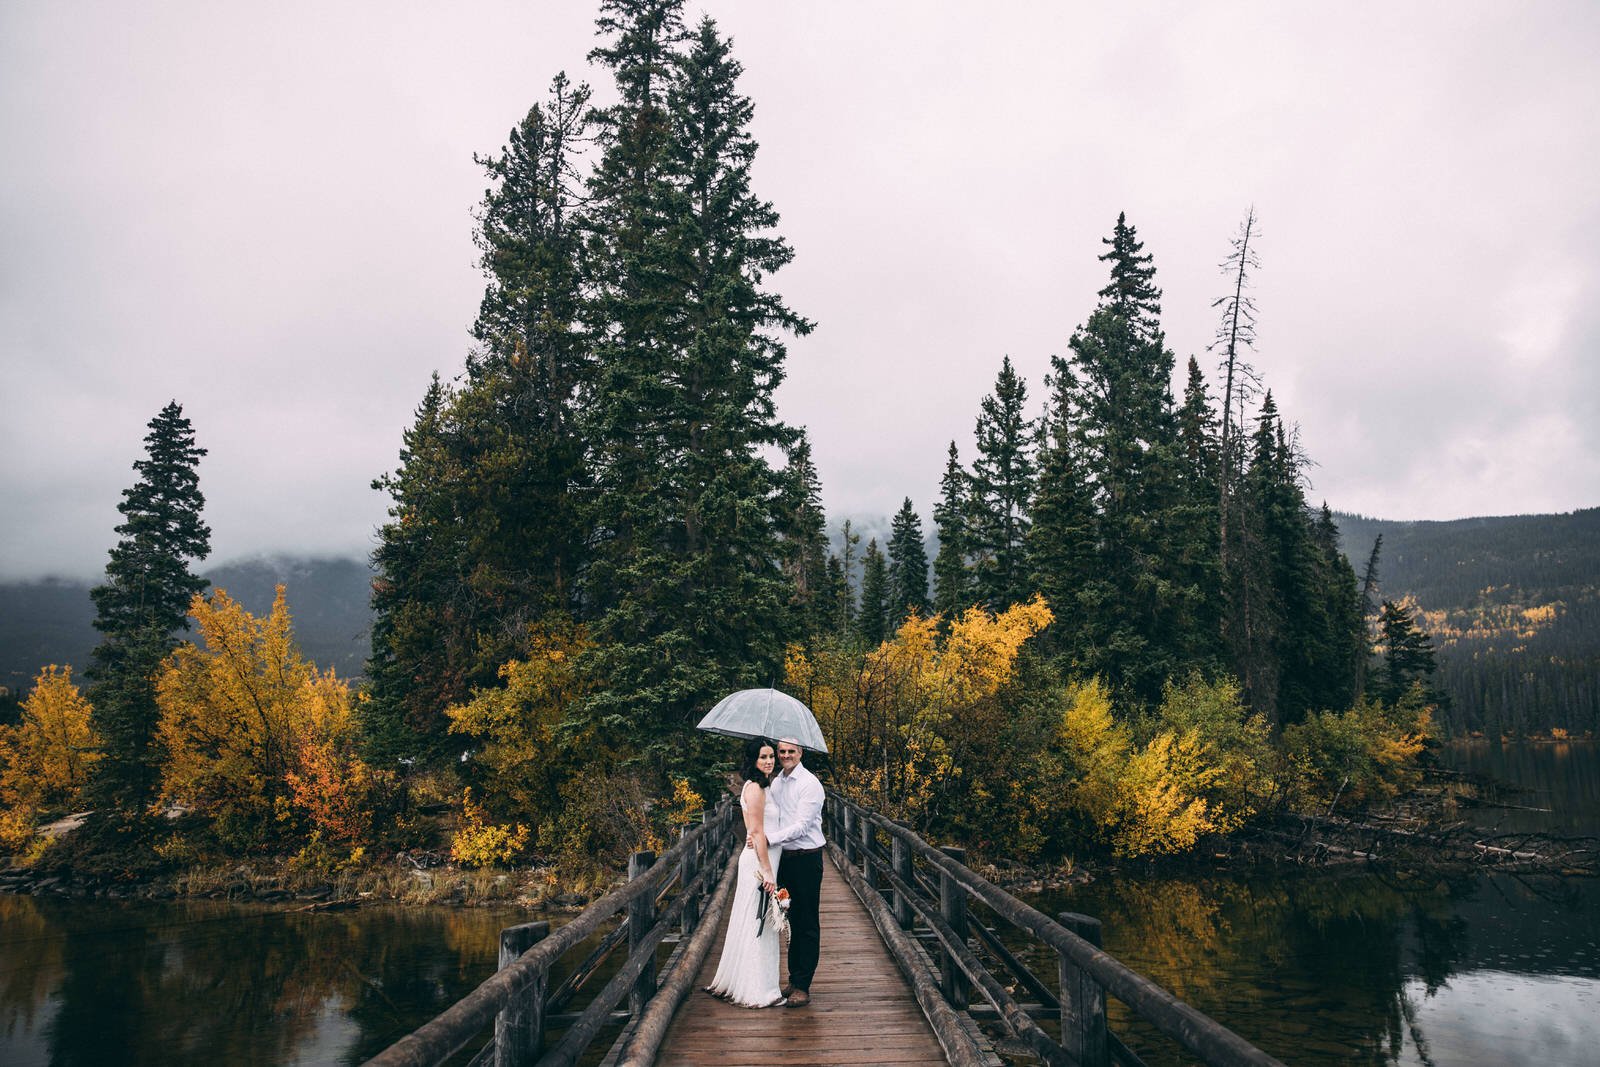 outdoor elopement wedding venues in jasper national park